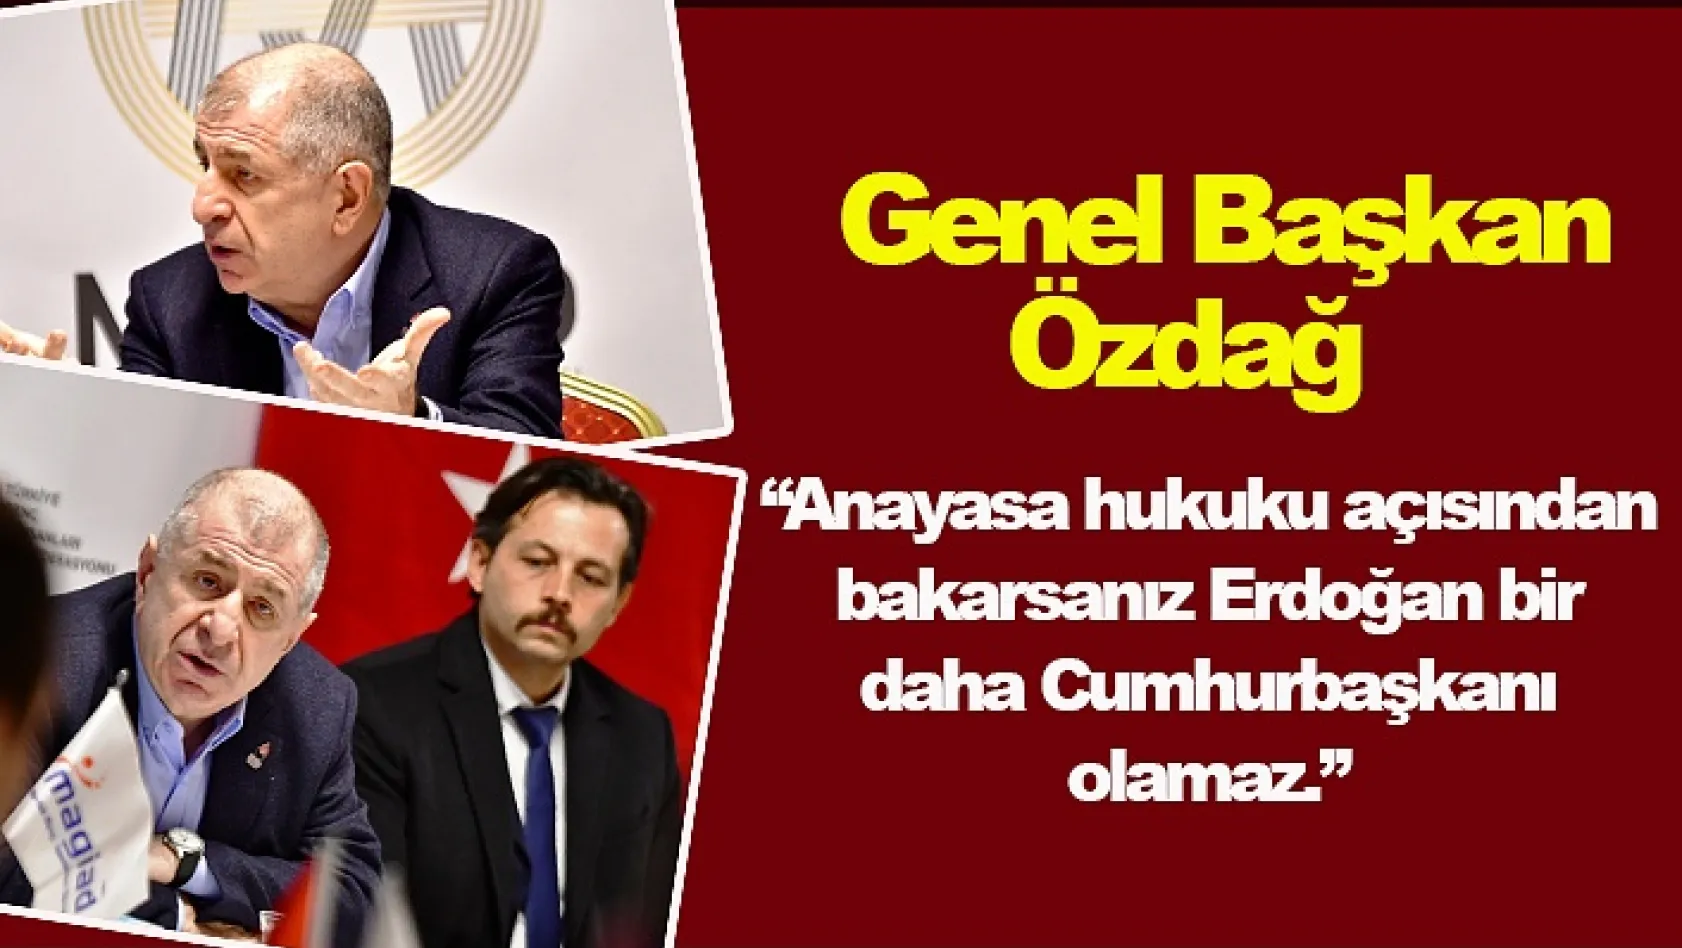 Genel Başkan Özdağ 'Anayasa hukuku açısından bakarsanız Erdoğan bir daha Cumhurbaşkanı olamaz'